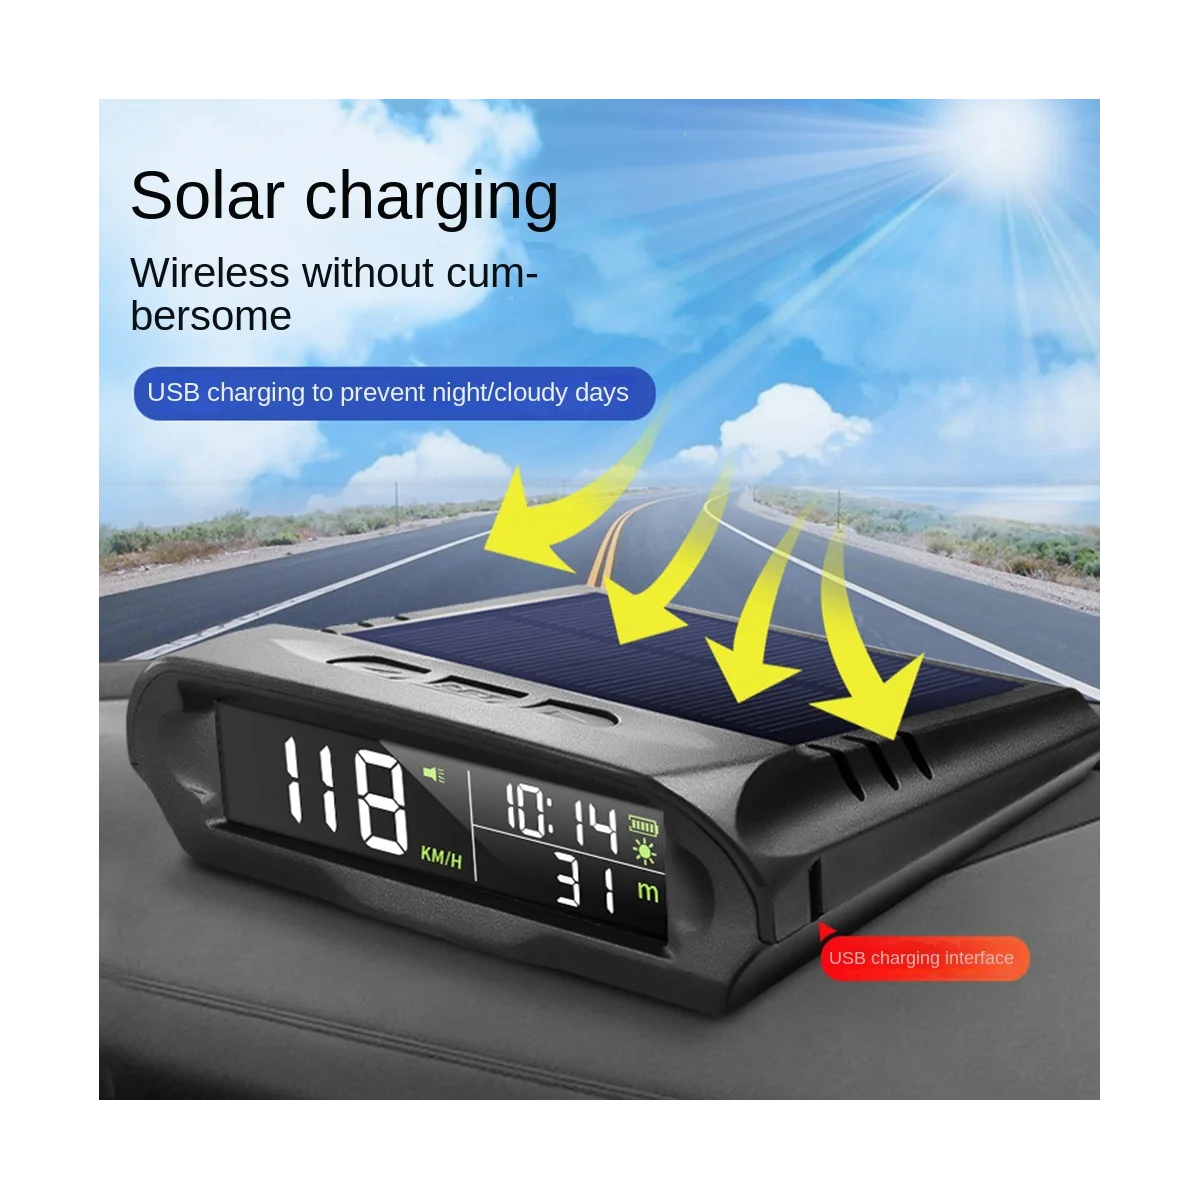 Univerzálny HUD X 98 Auto Solárne Digitálny Merač GPS Tachometer prekročenia rýchlosti Alarm, Vzdialenosti, Nadmorskej výšky Head Up Display